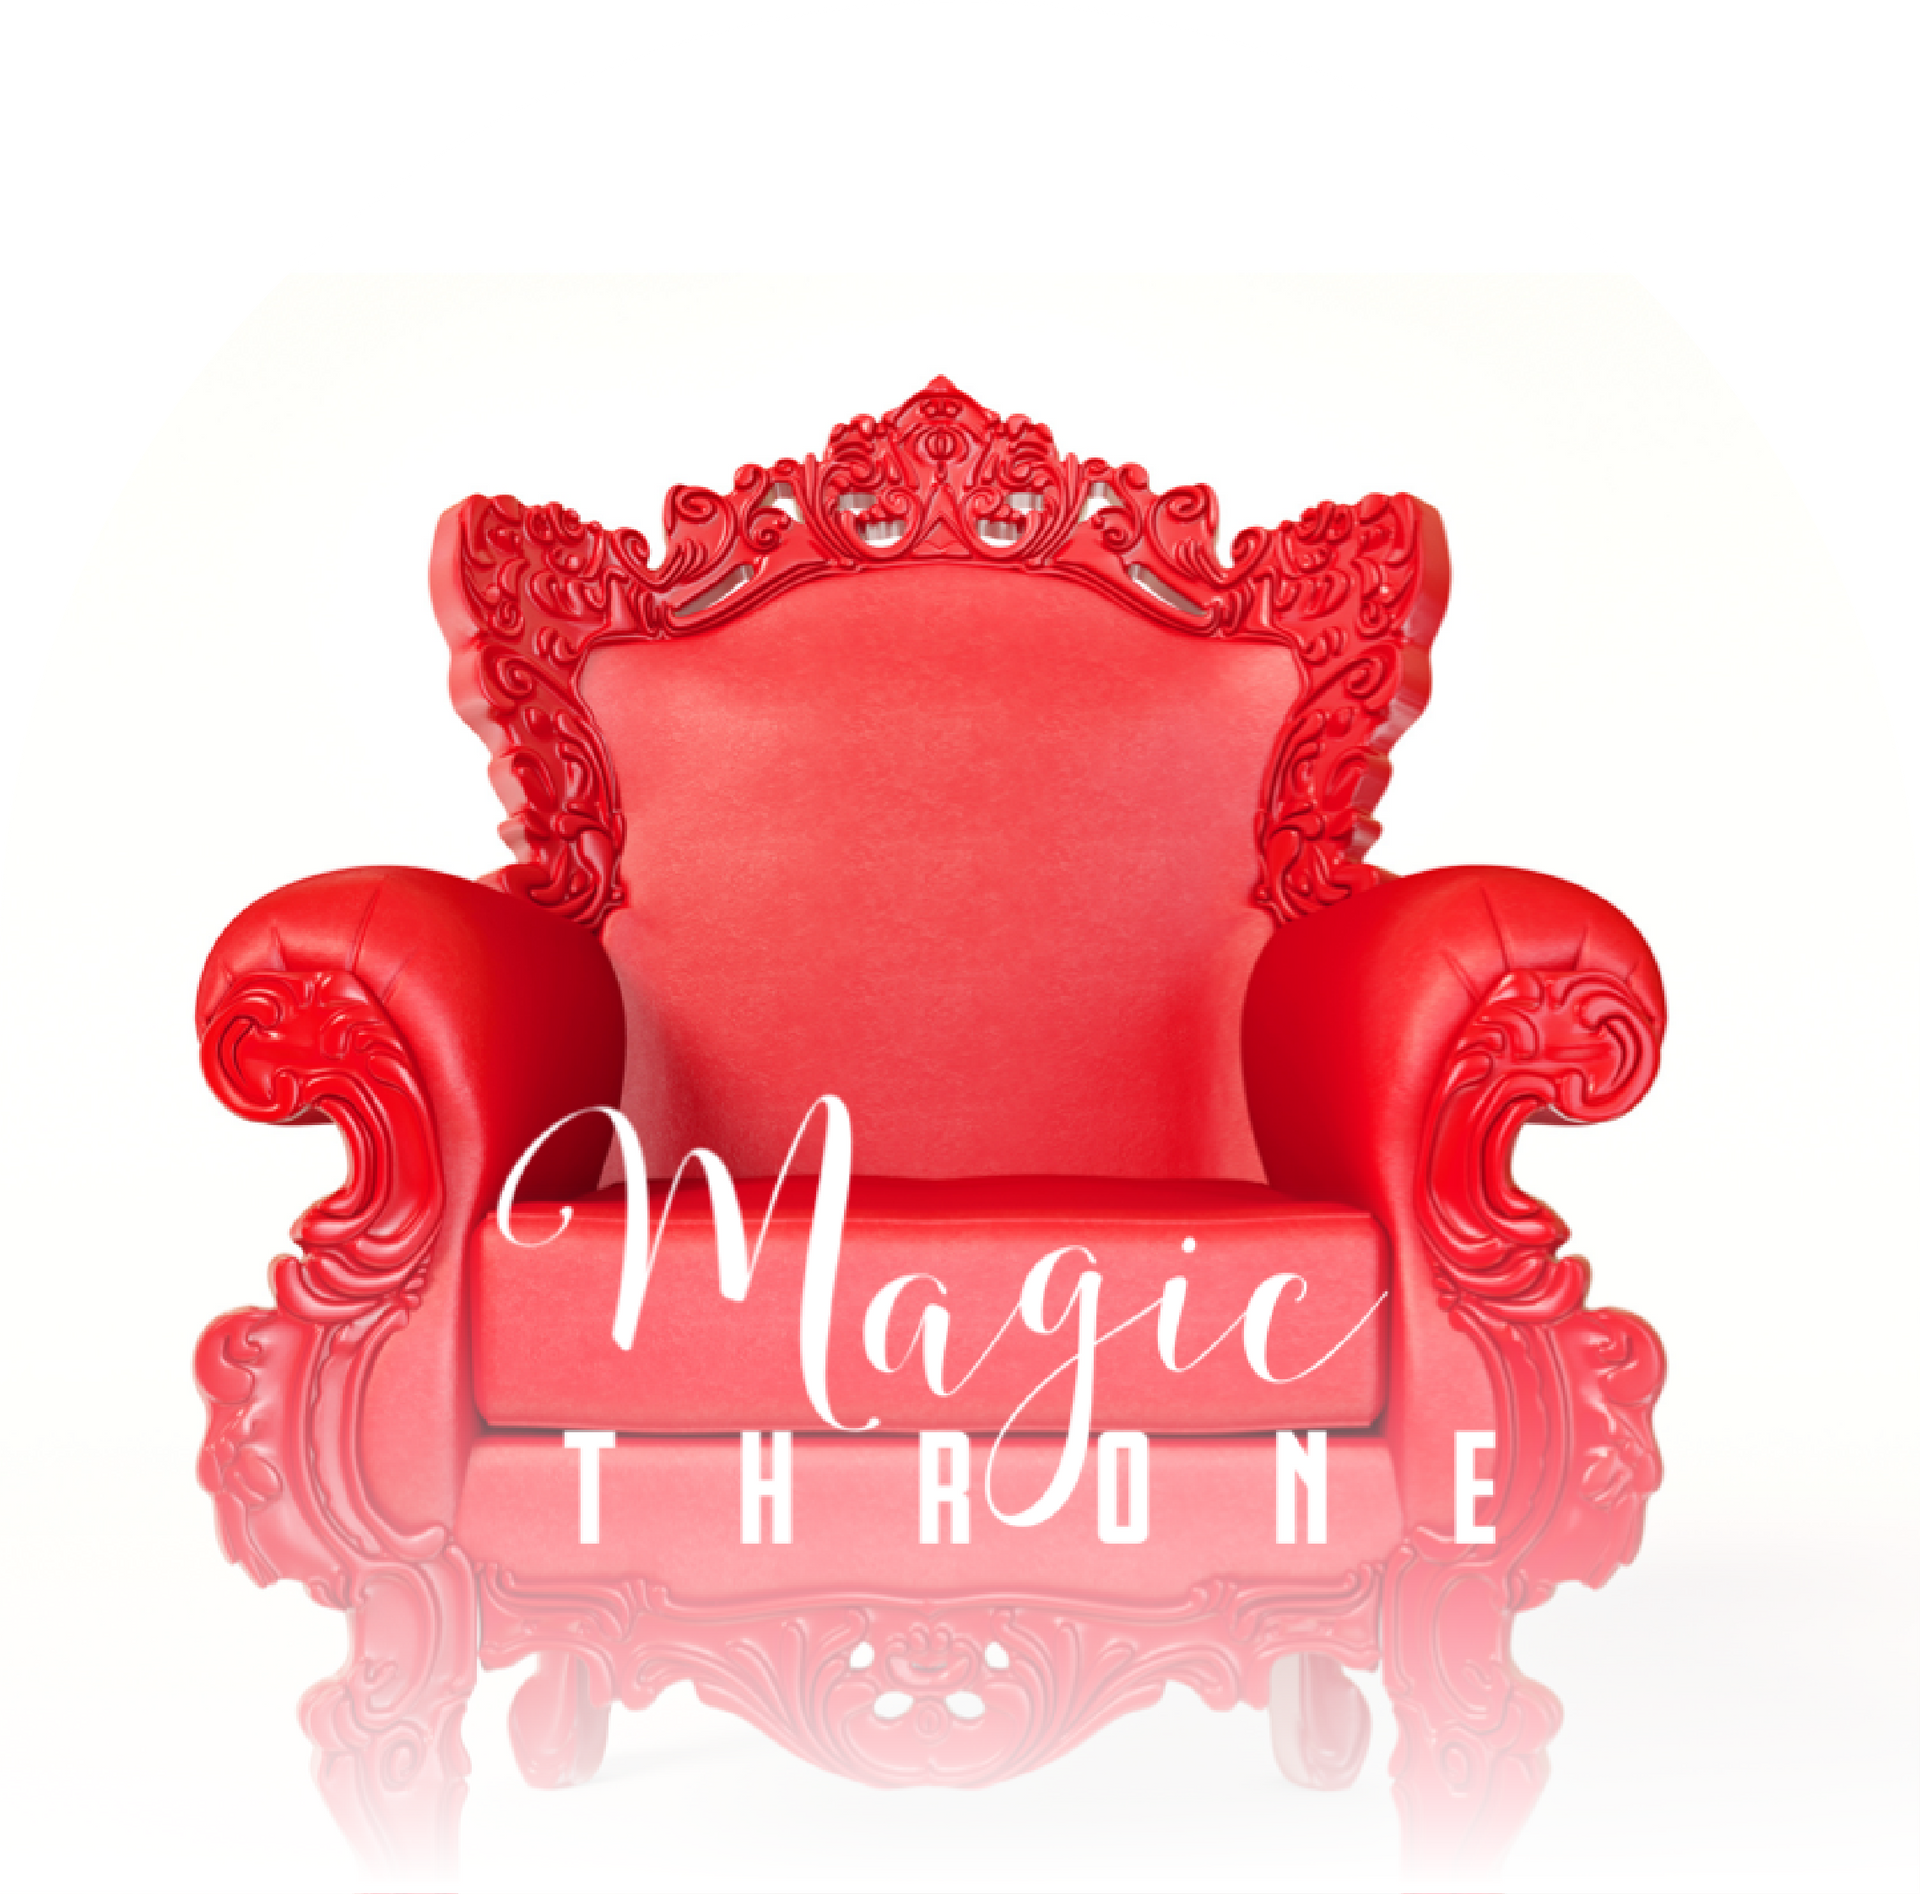 Magic Throne- Kegal Chair at Holos Medical Spa.